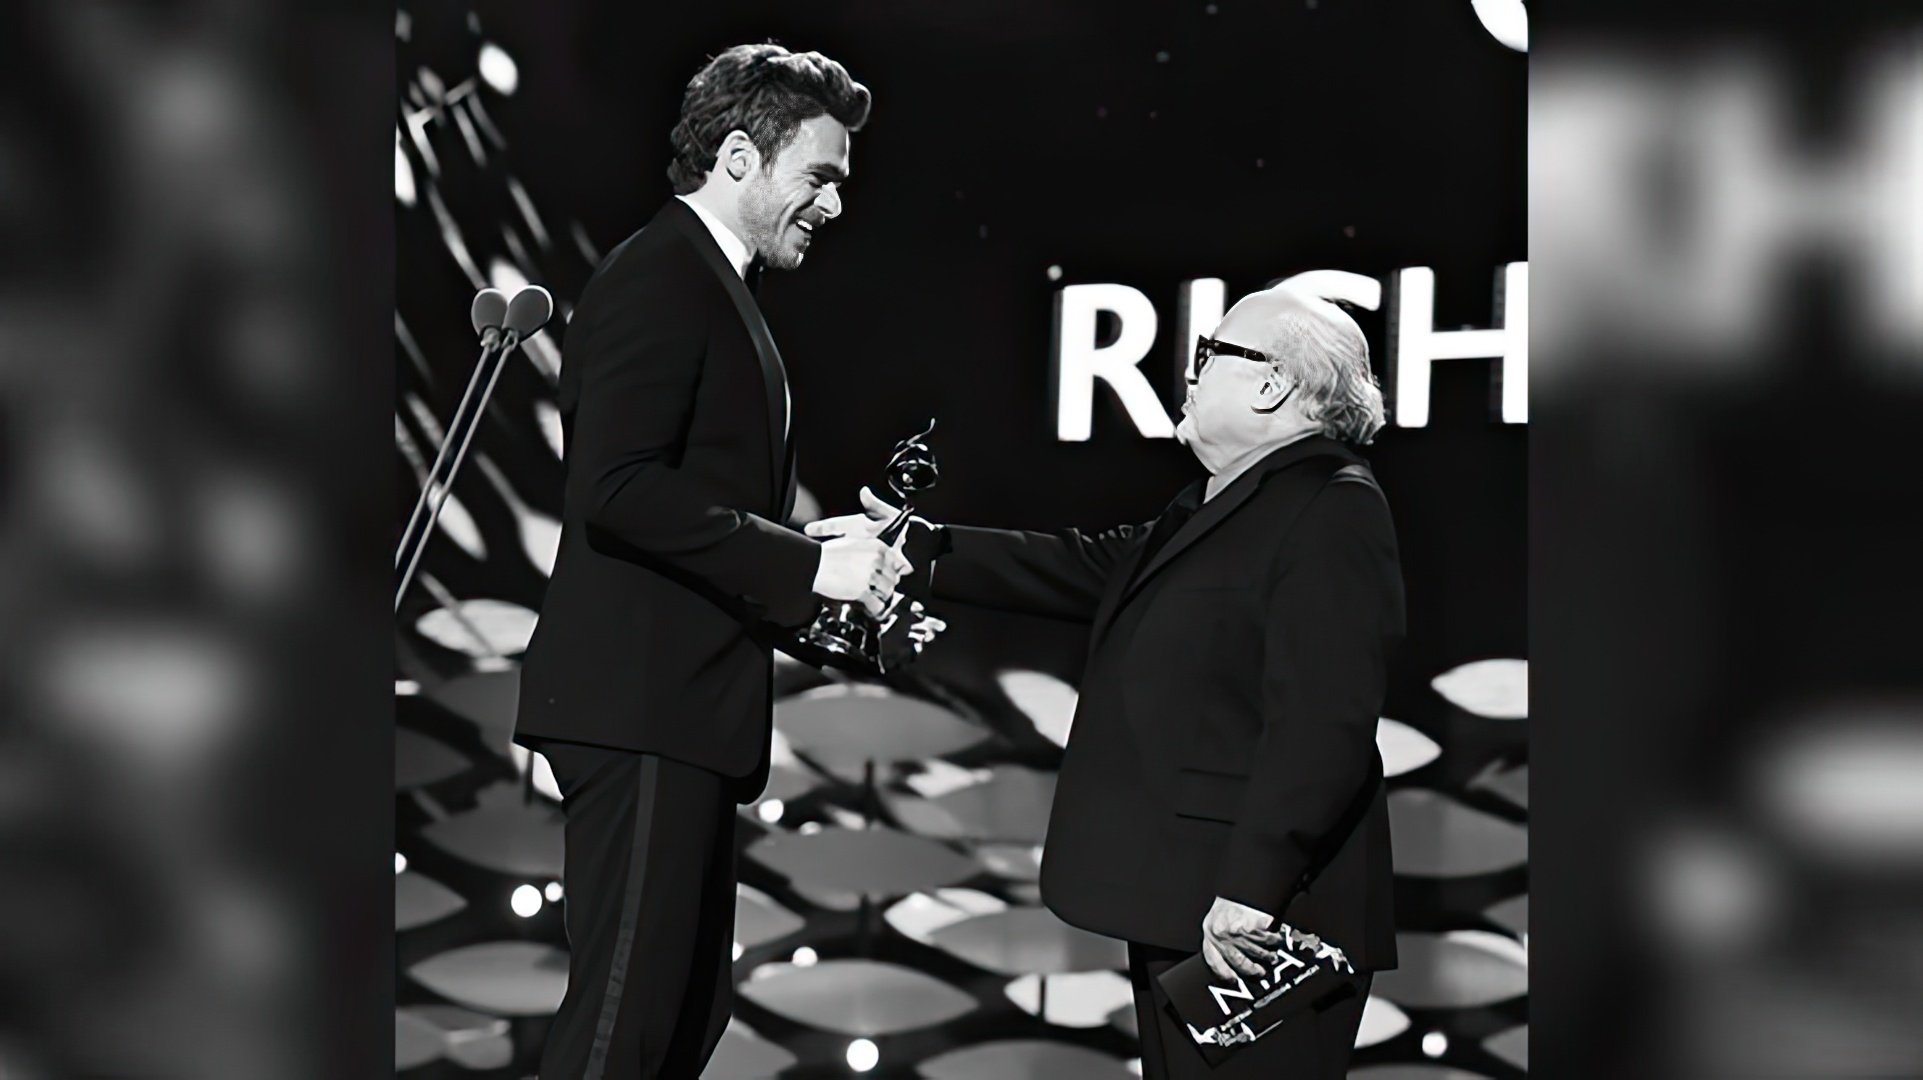 Richard Madden receiving the Golden Globe statuette